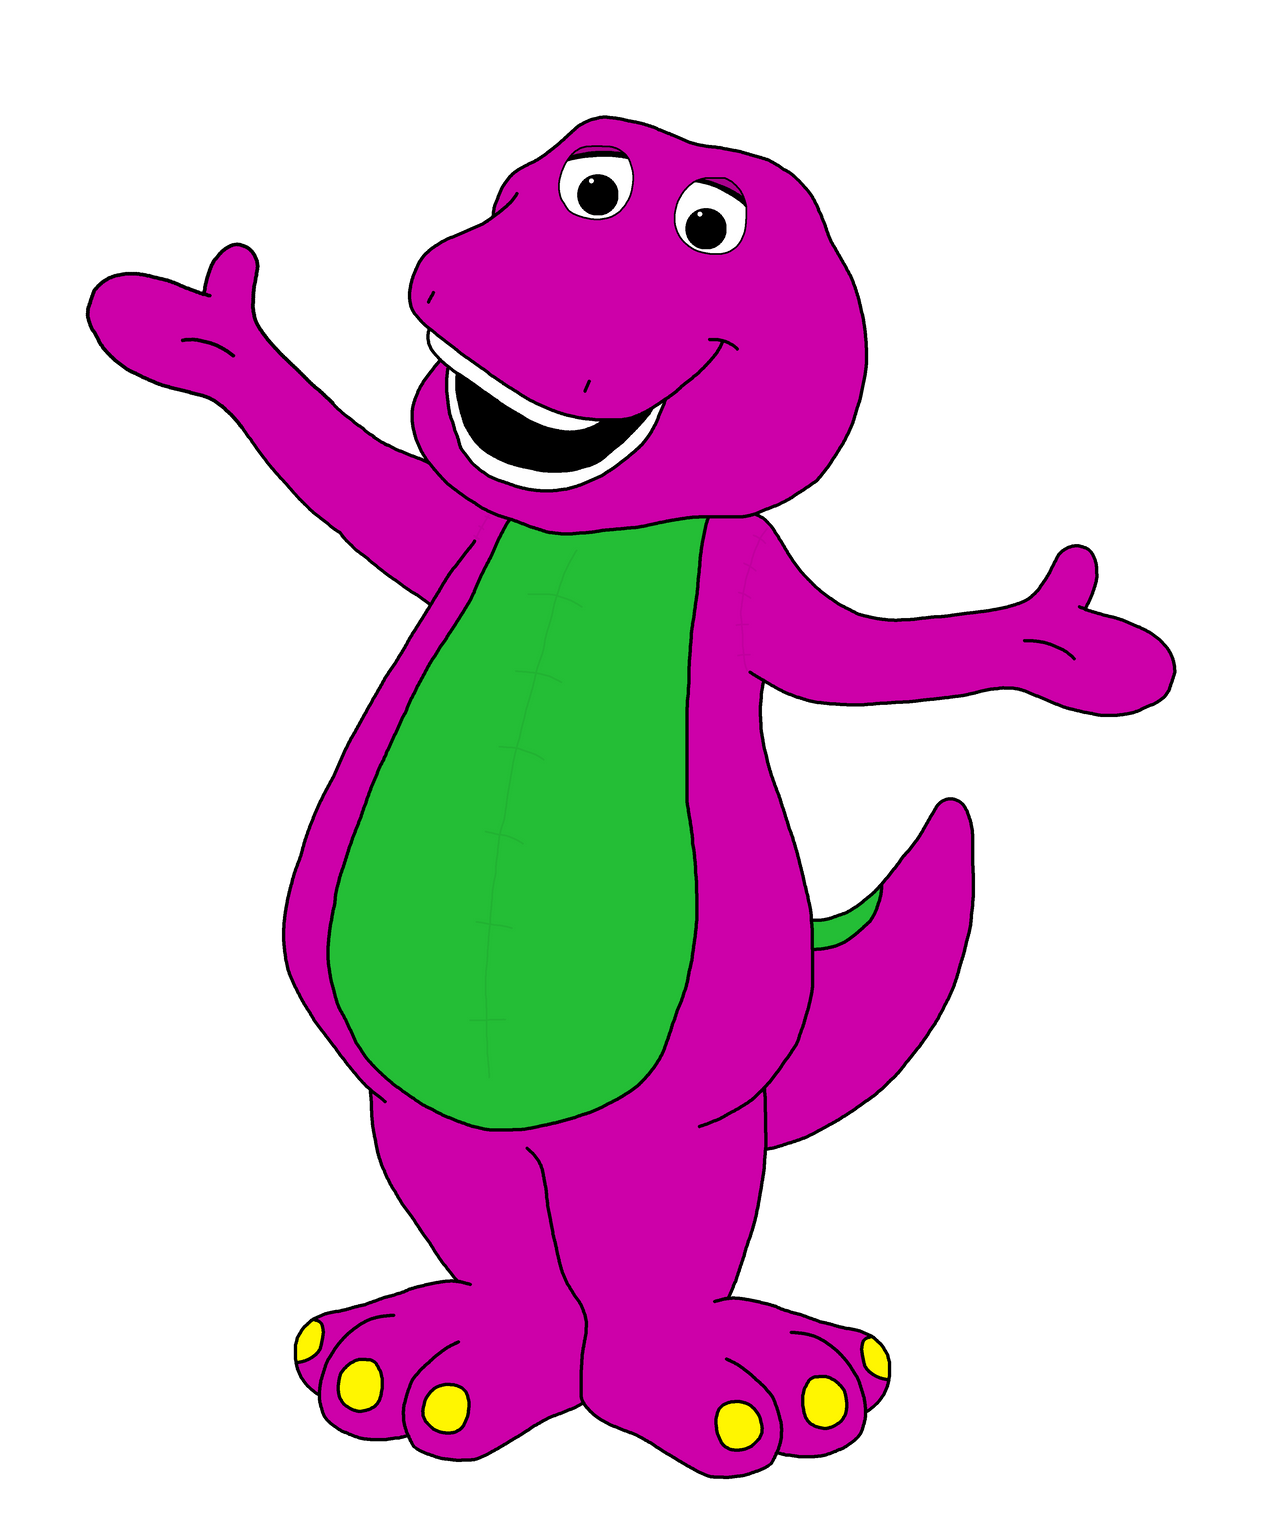 Barney The Dinosaur By Deetommcartoons On Deviantart